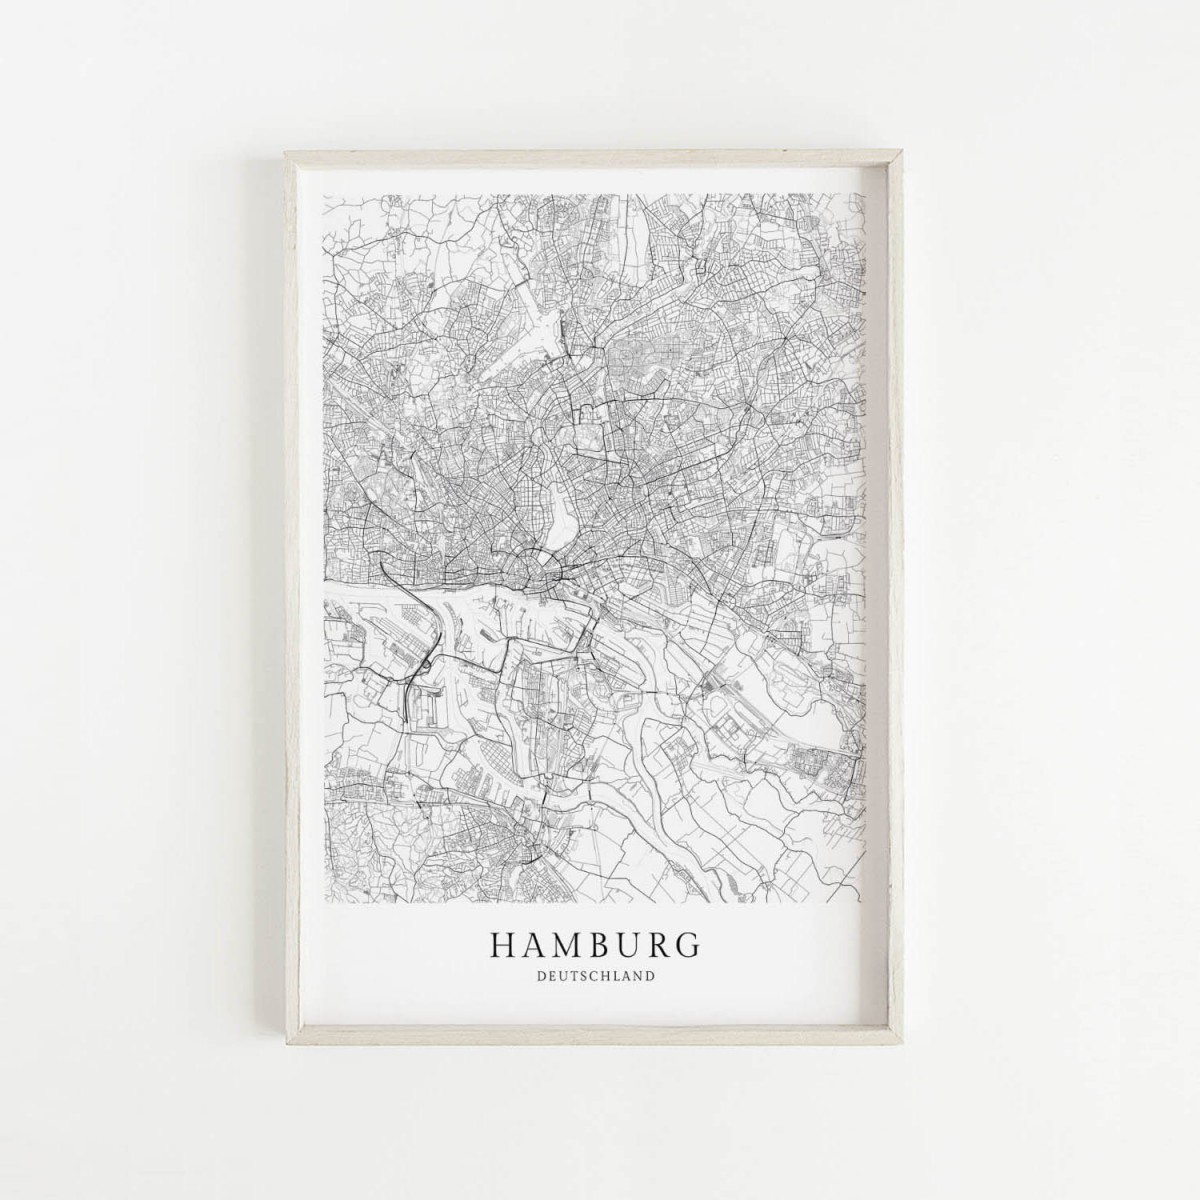 HAMBURG als hochwertiges Poster im skandinavischen Stil von Skanemarie +++ Geschenkidee